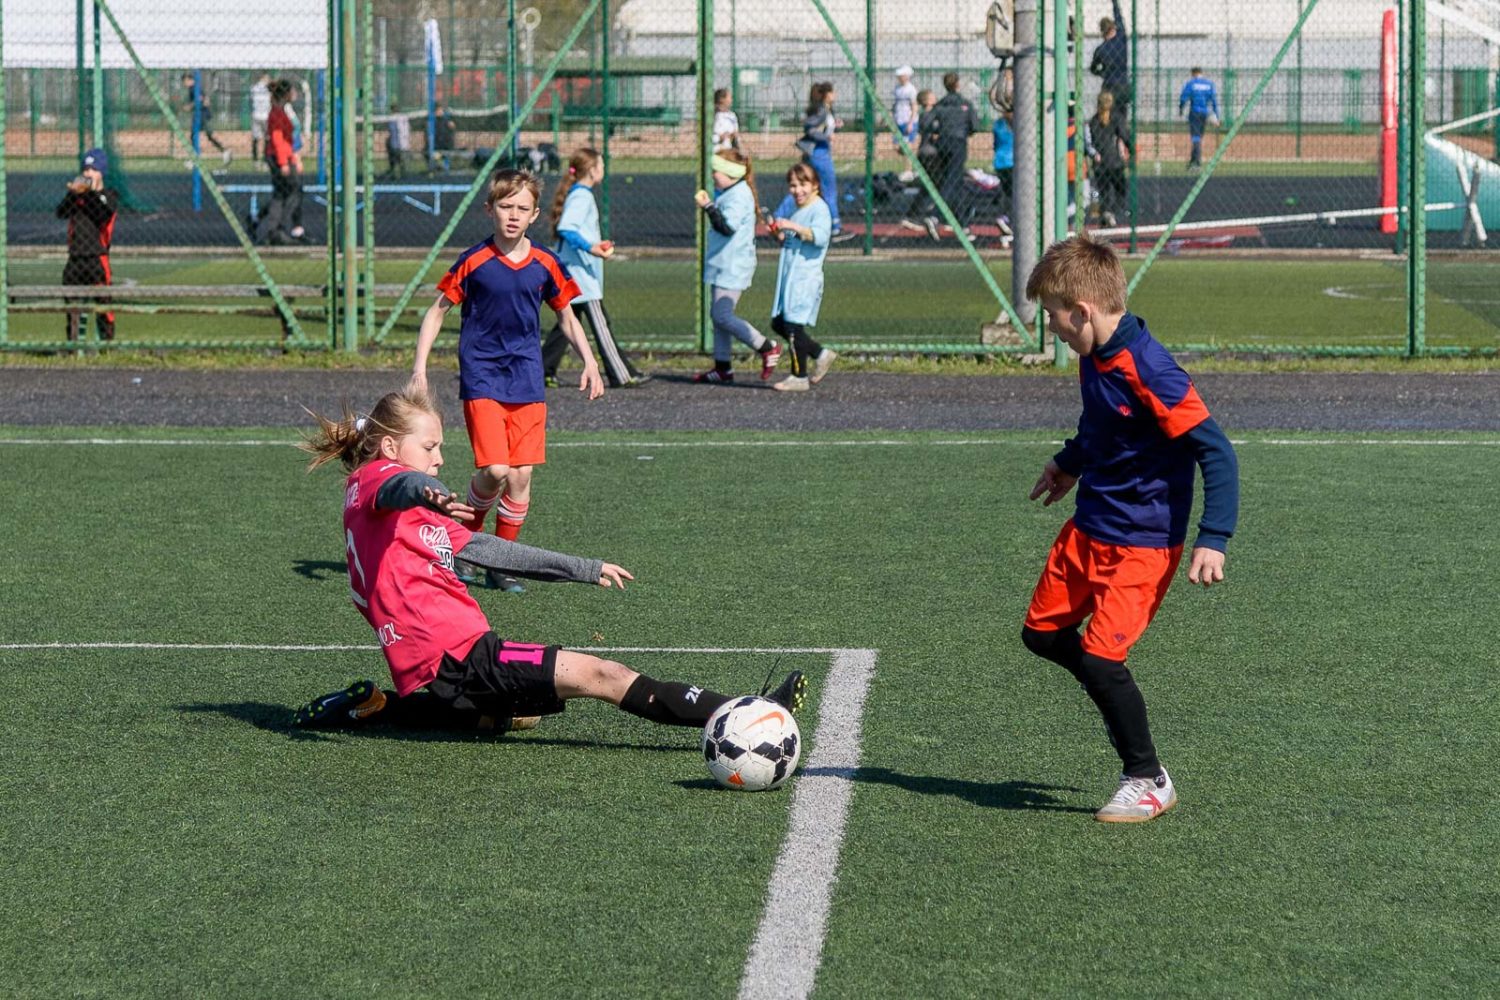 В Красноярске состоится Кубок по мини-футболу на призы ФК «Тотем»